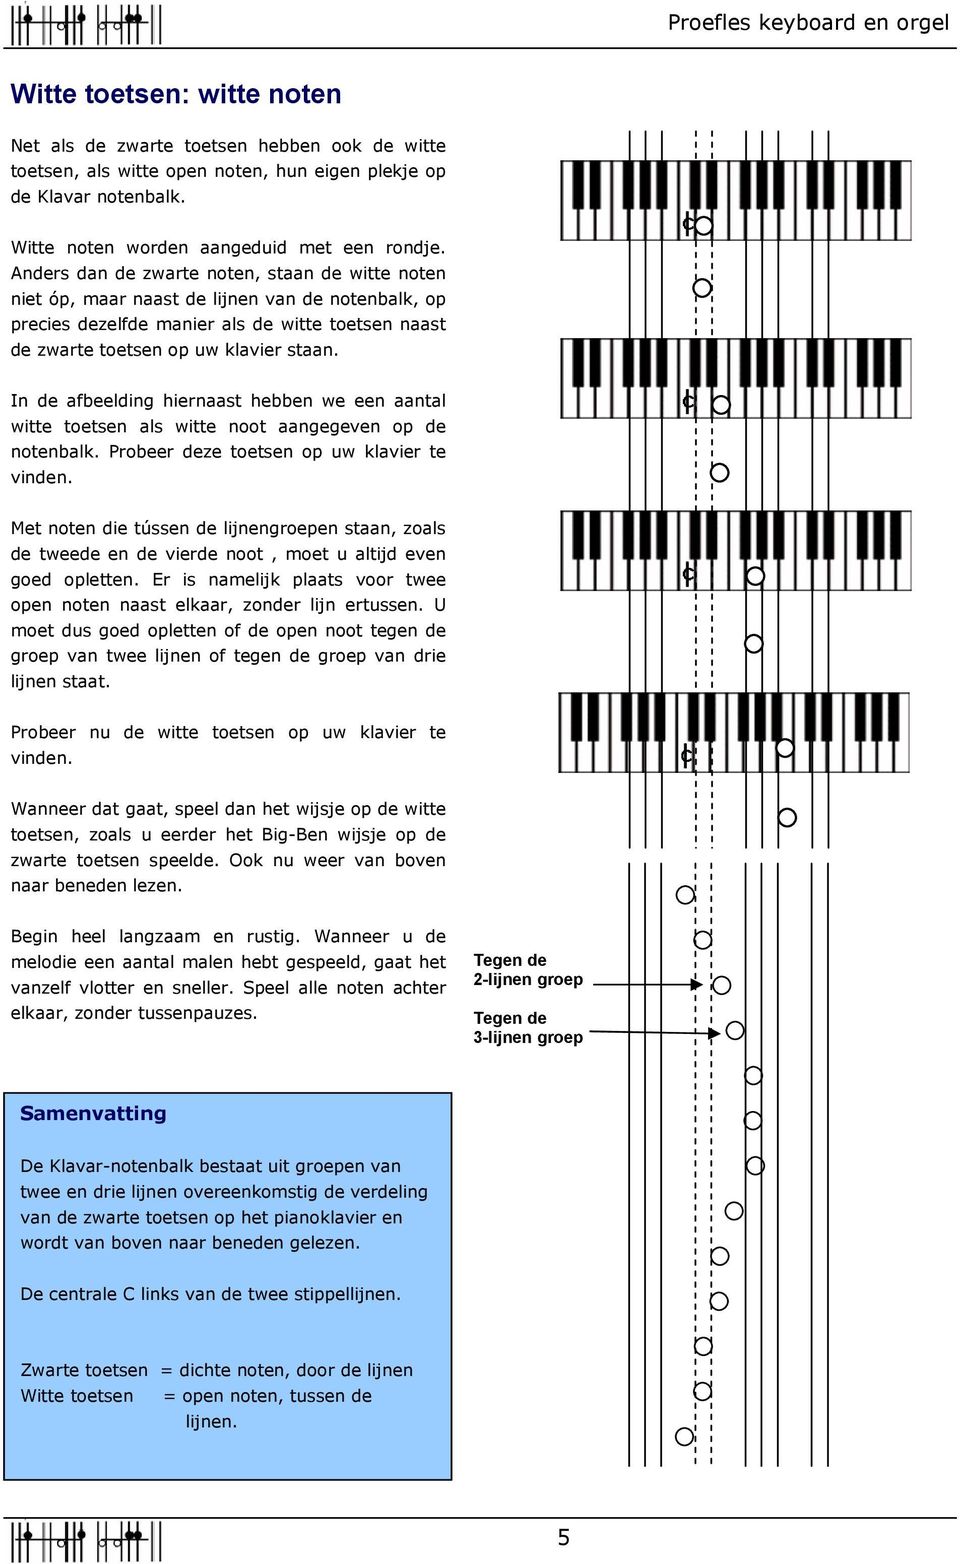 In de afbeelding hiernaast hebben we een aantal witte tetsen als witte nt aangegeven de ntenbalk. Prbeer deze tetsen uw klavier te vinden.